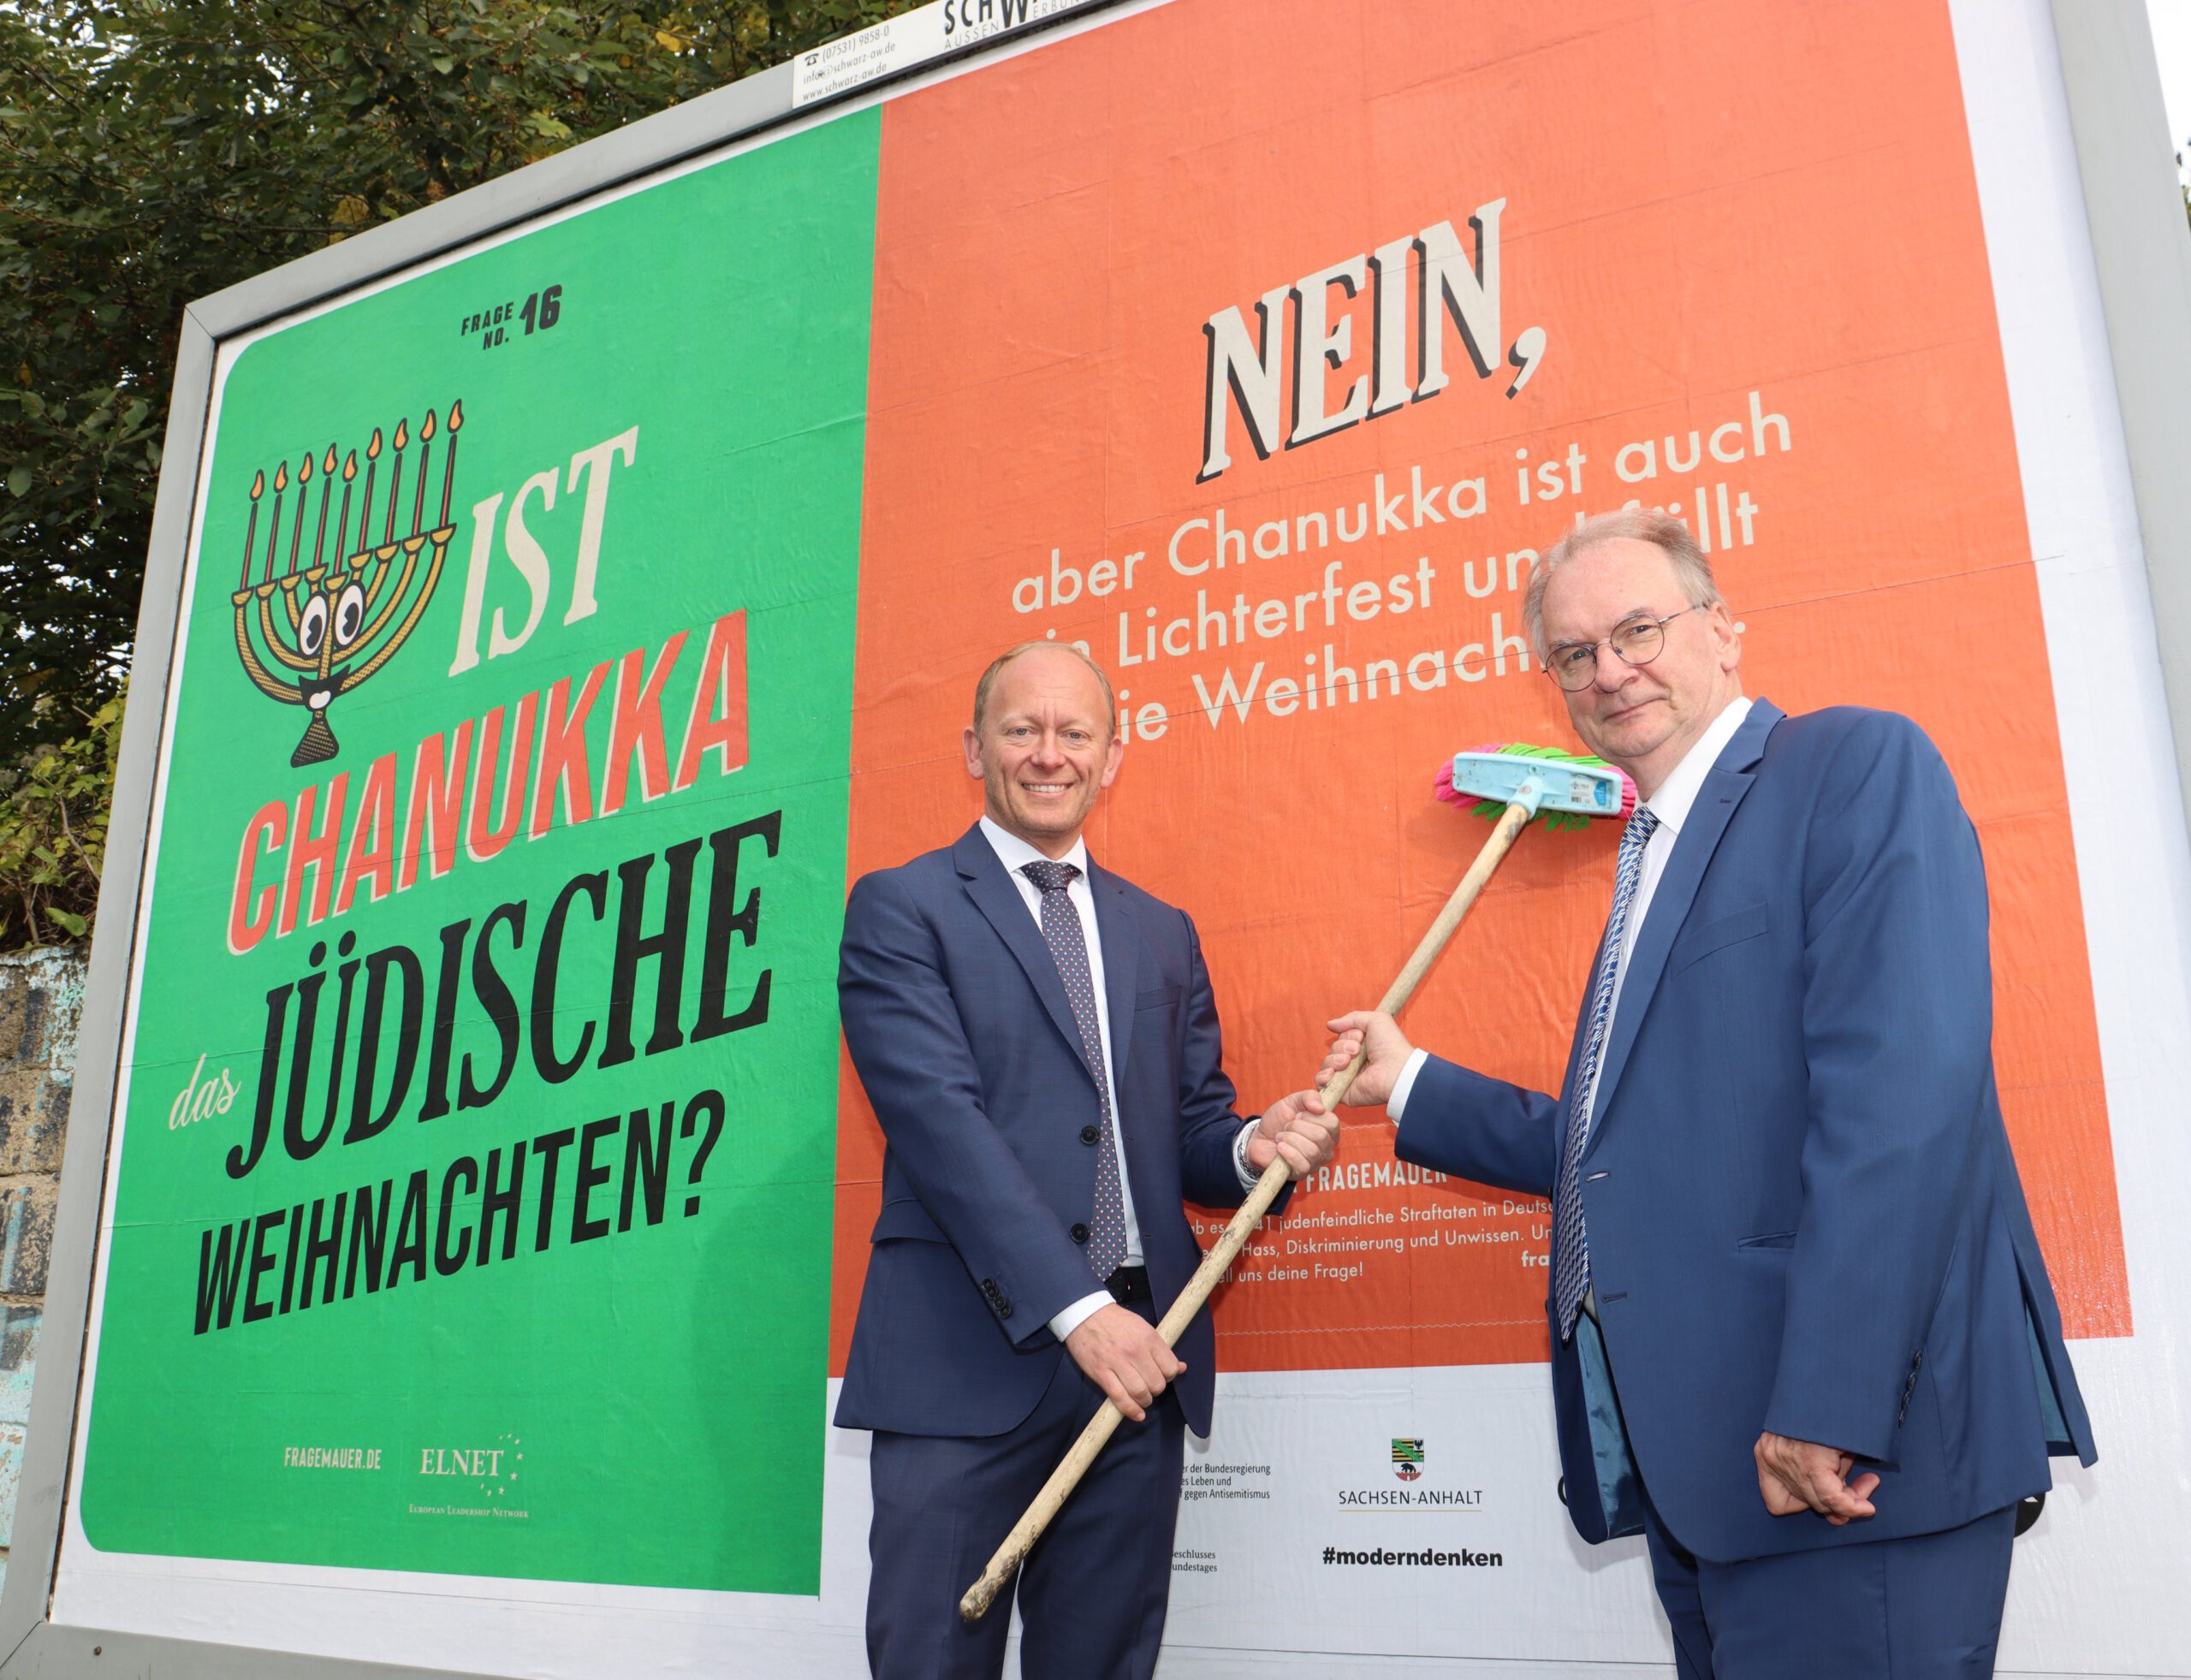 Das Bild zeigt ELNET-CEO Carsten Ovens und Ministerpräsident Dr. Reiner Haseloff vor dem Plakat der Kampagne "Fragemauer".